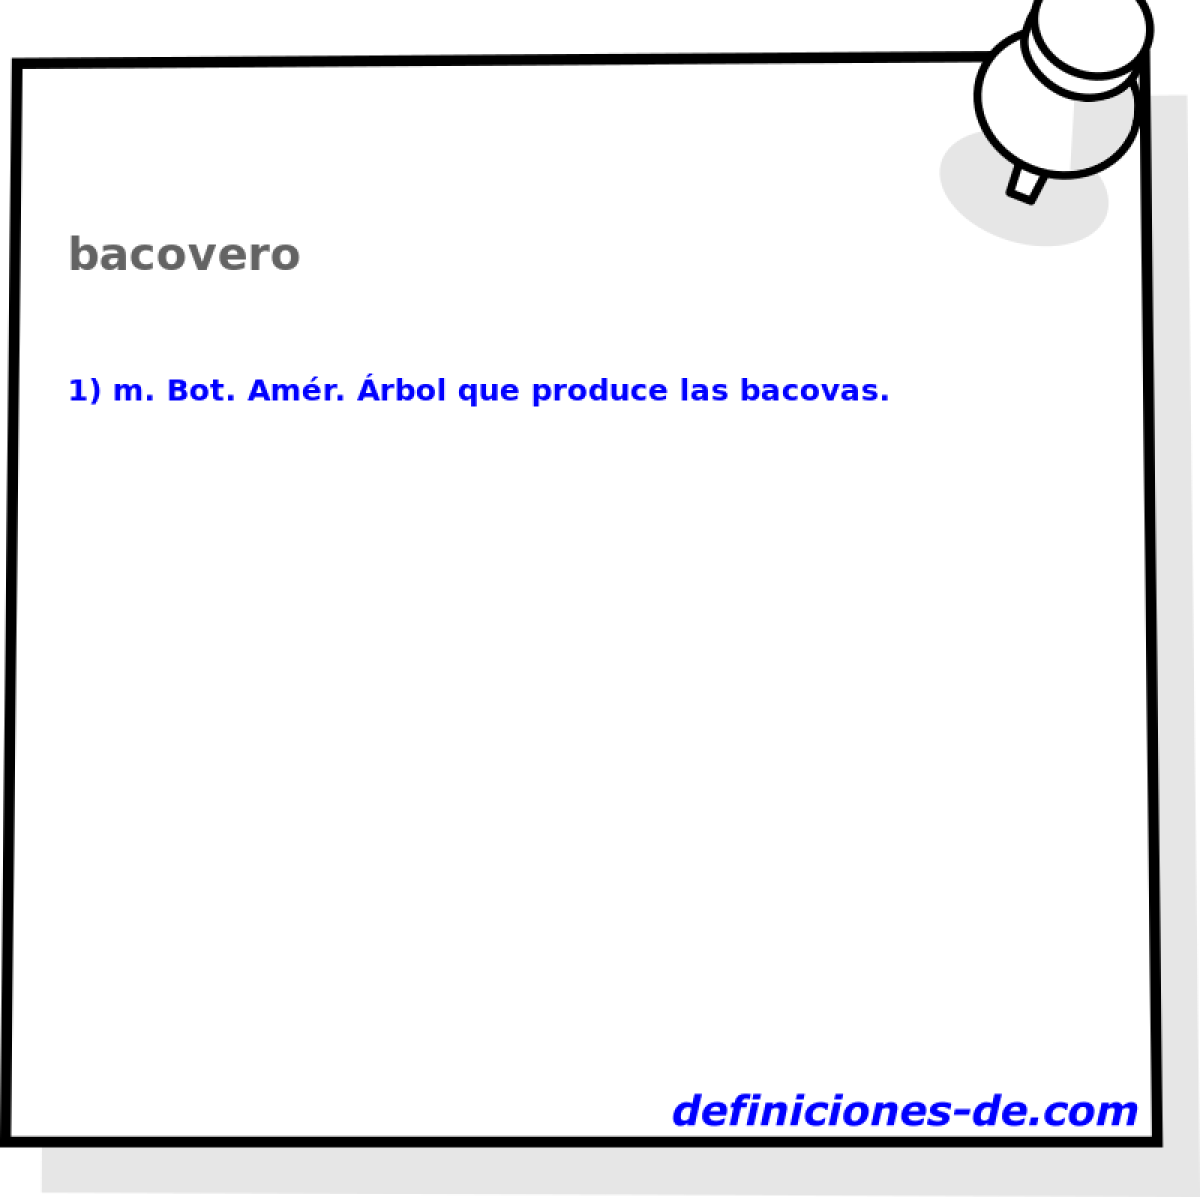 bacovero 